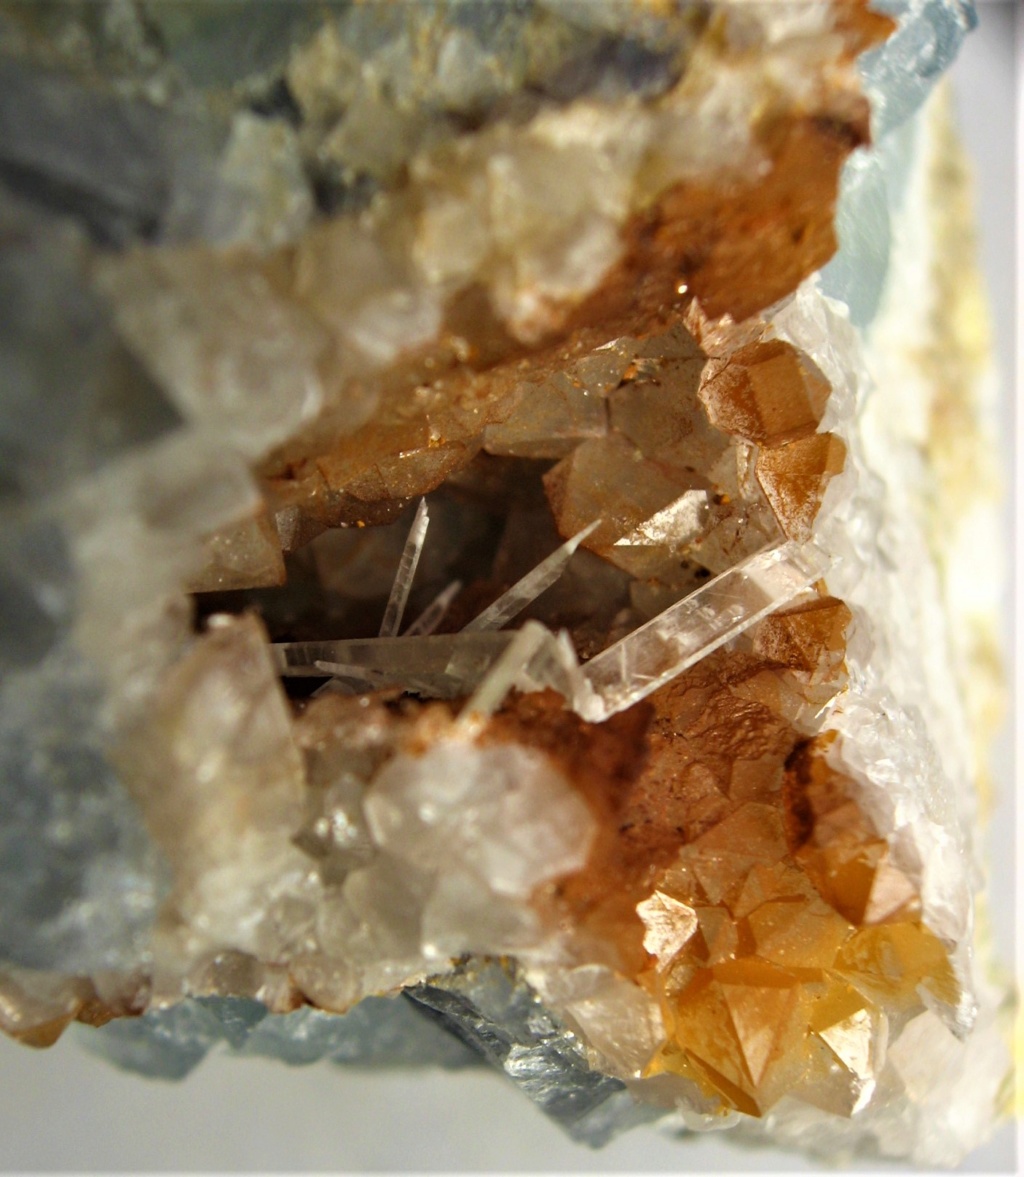 Minéraux de la mine CLARA autres que la Fluorite et la barite Img_3528